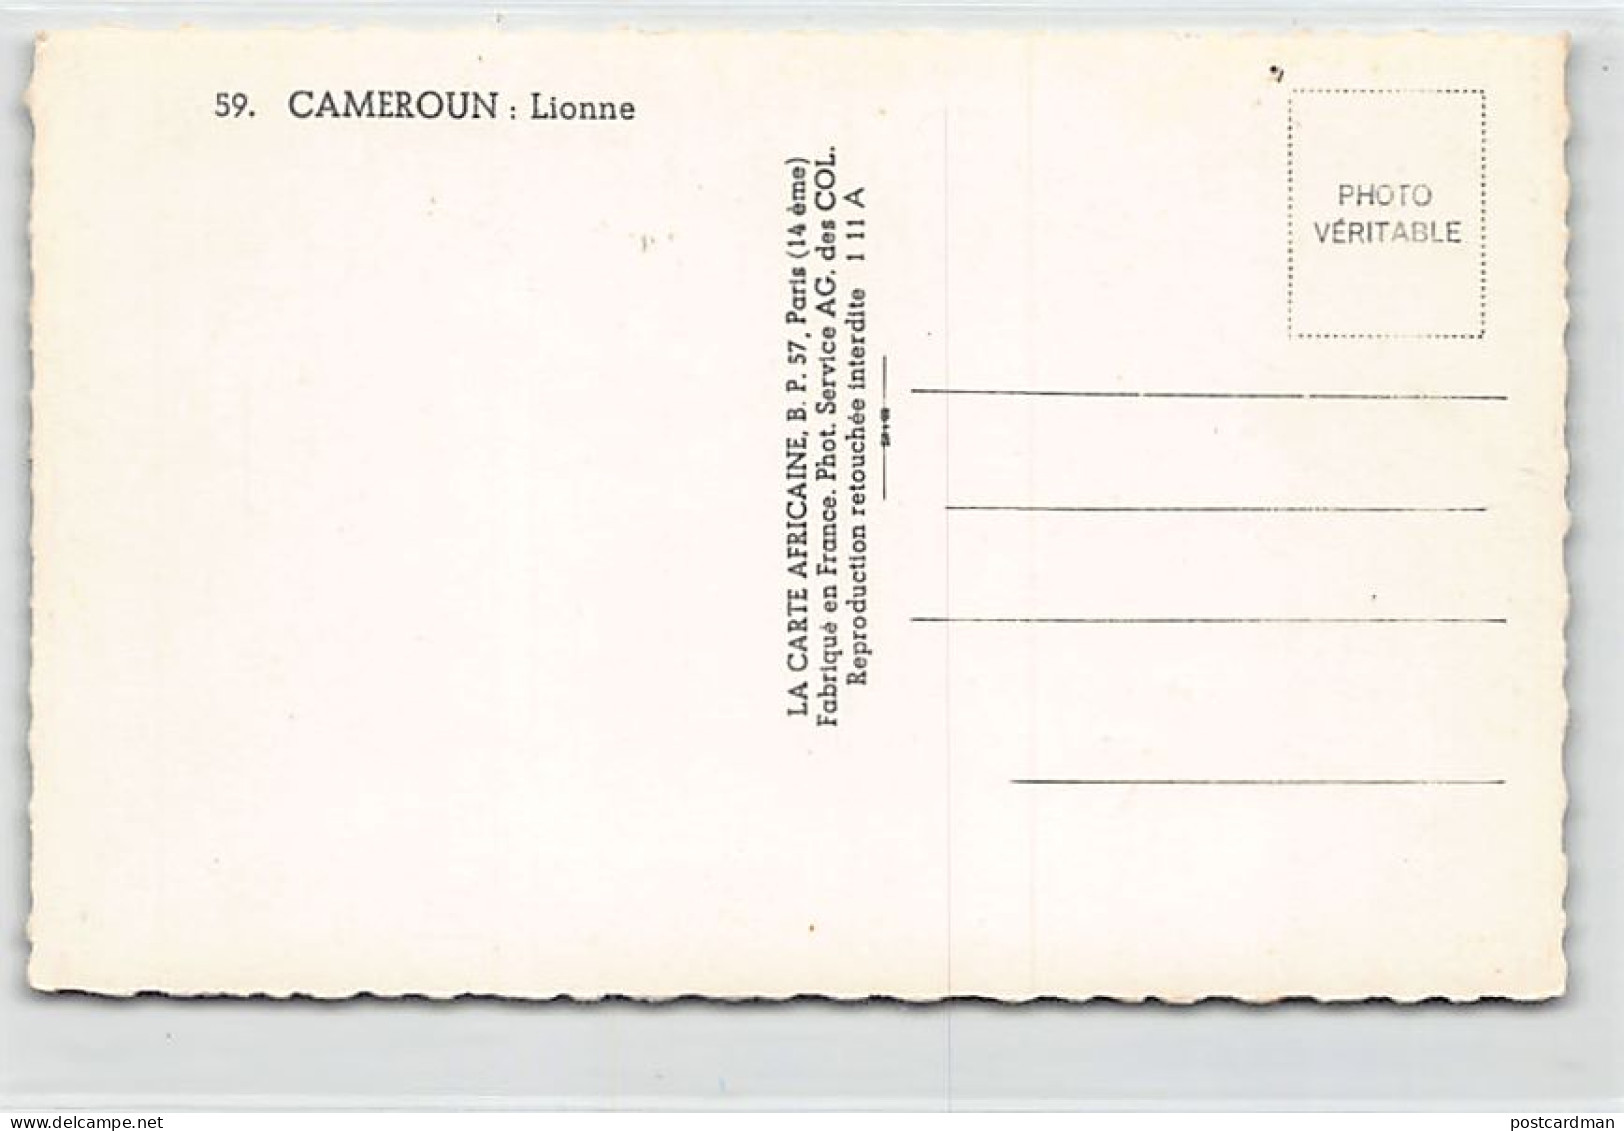 Cameroun - Lionne - Ed. La Carte Africaine 59 - Camerún